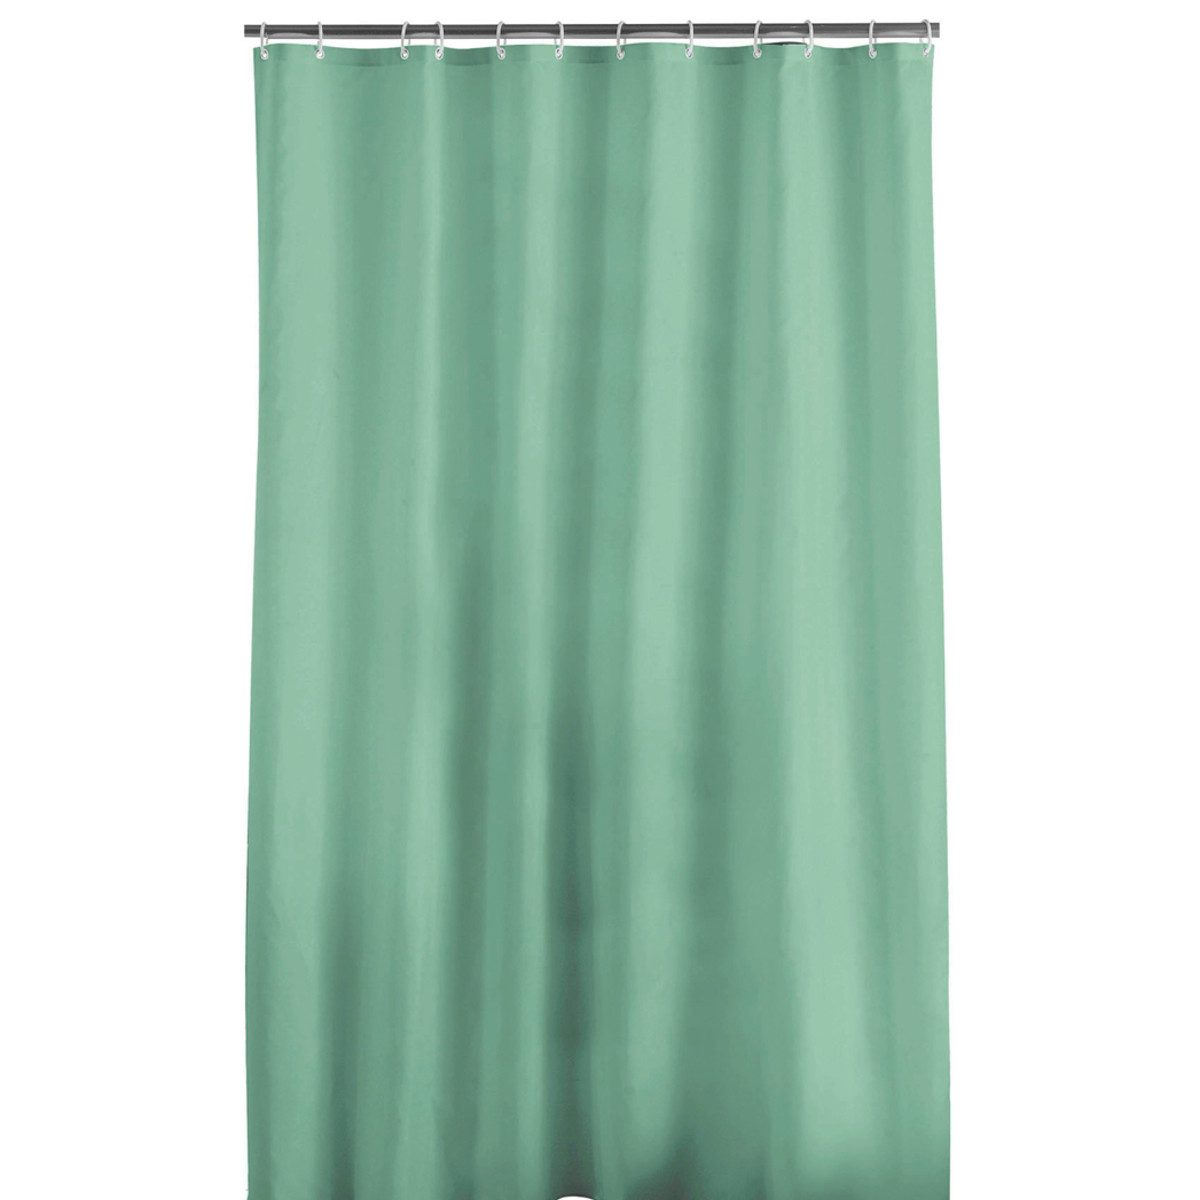 Sanixa Duschvorhang Duschvorhang Lindgrün 180 x 200 cm Polyester Badewannenvorhang Uni Breite 200 cm (inkl. Ringe, inkl. Vorhangringe), hochwertige Qualität mit Ringen